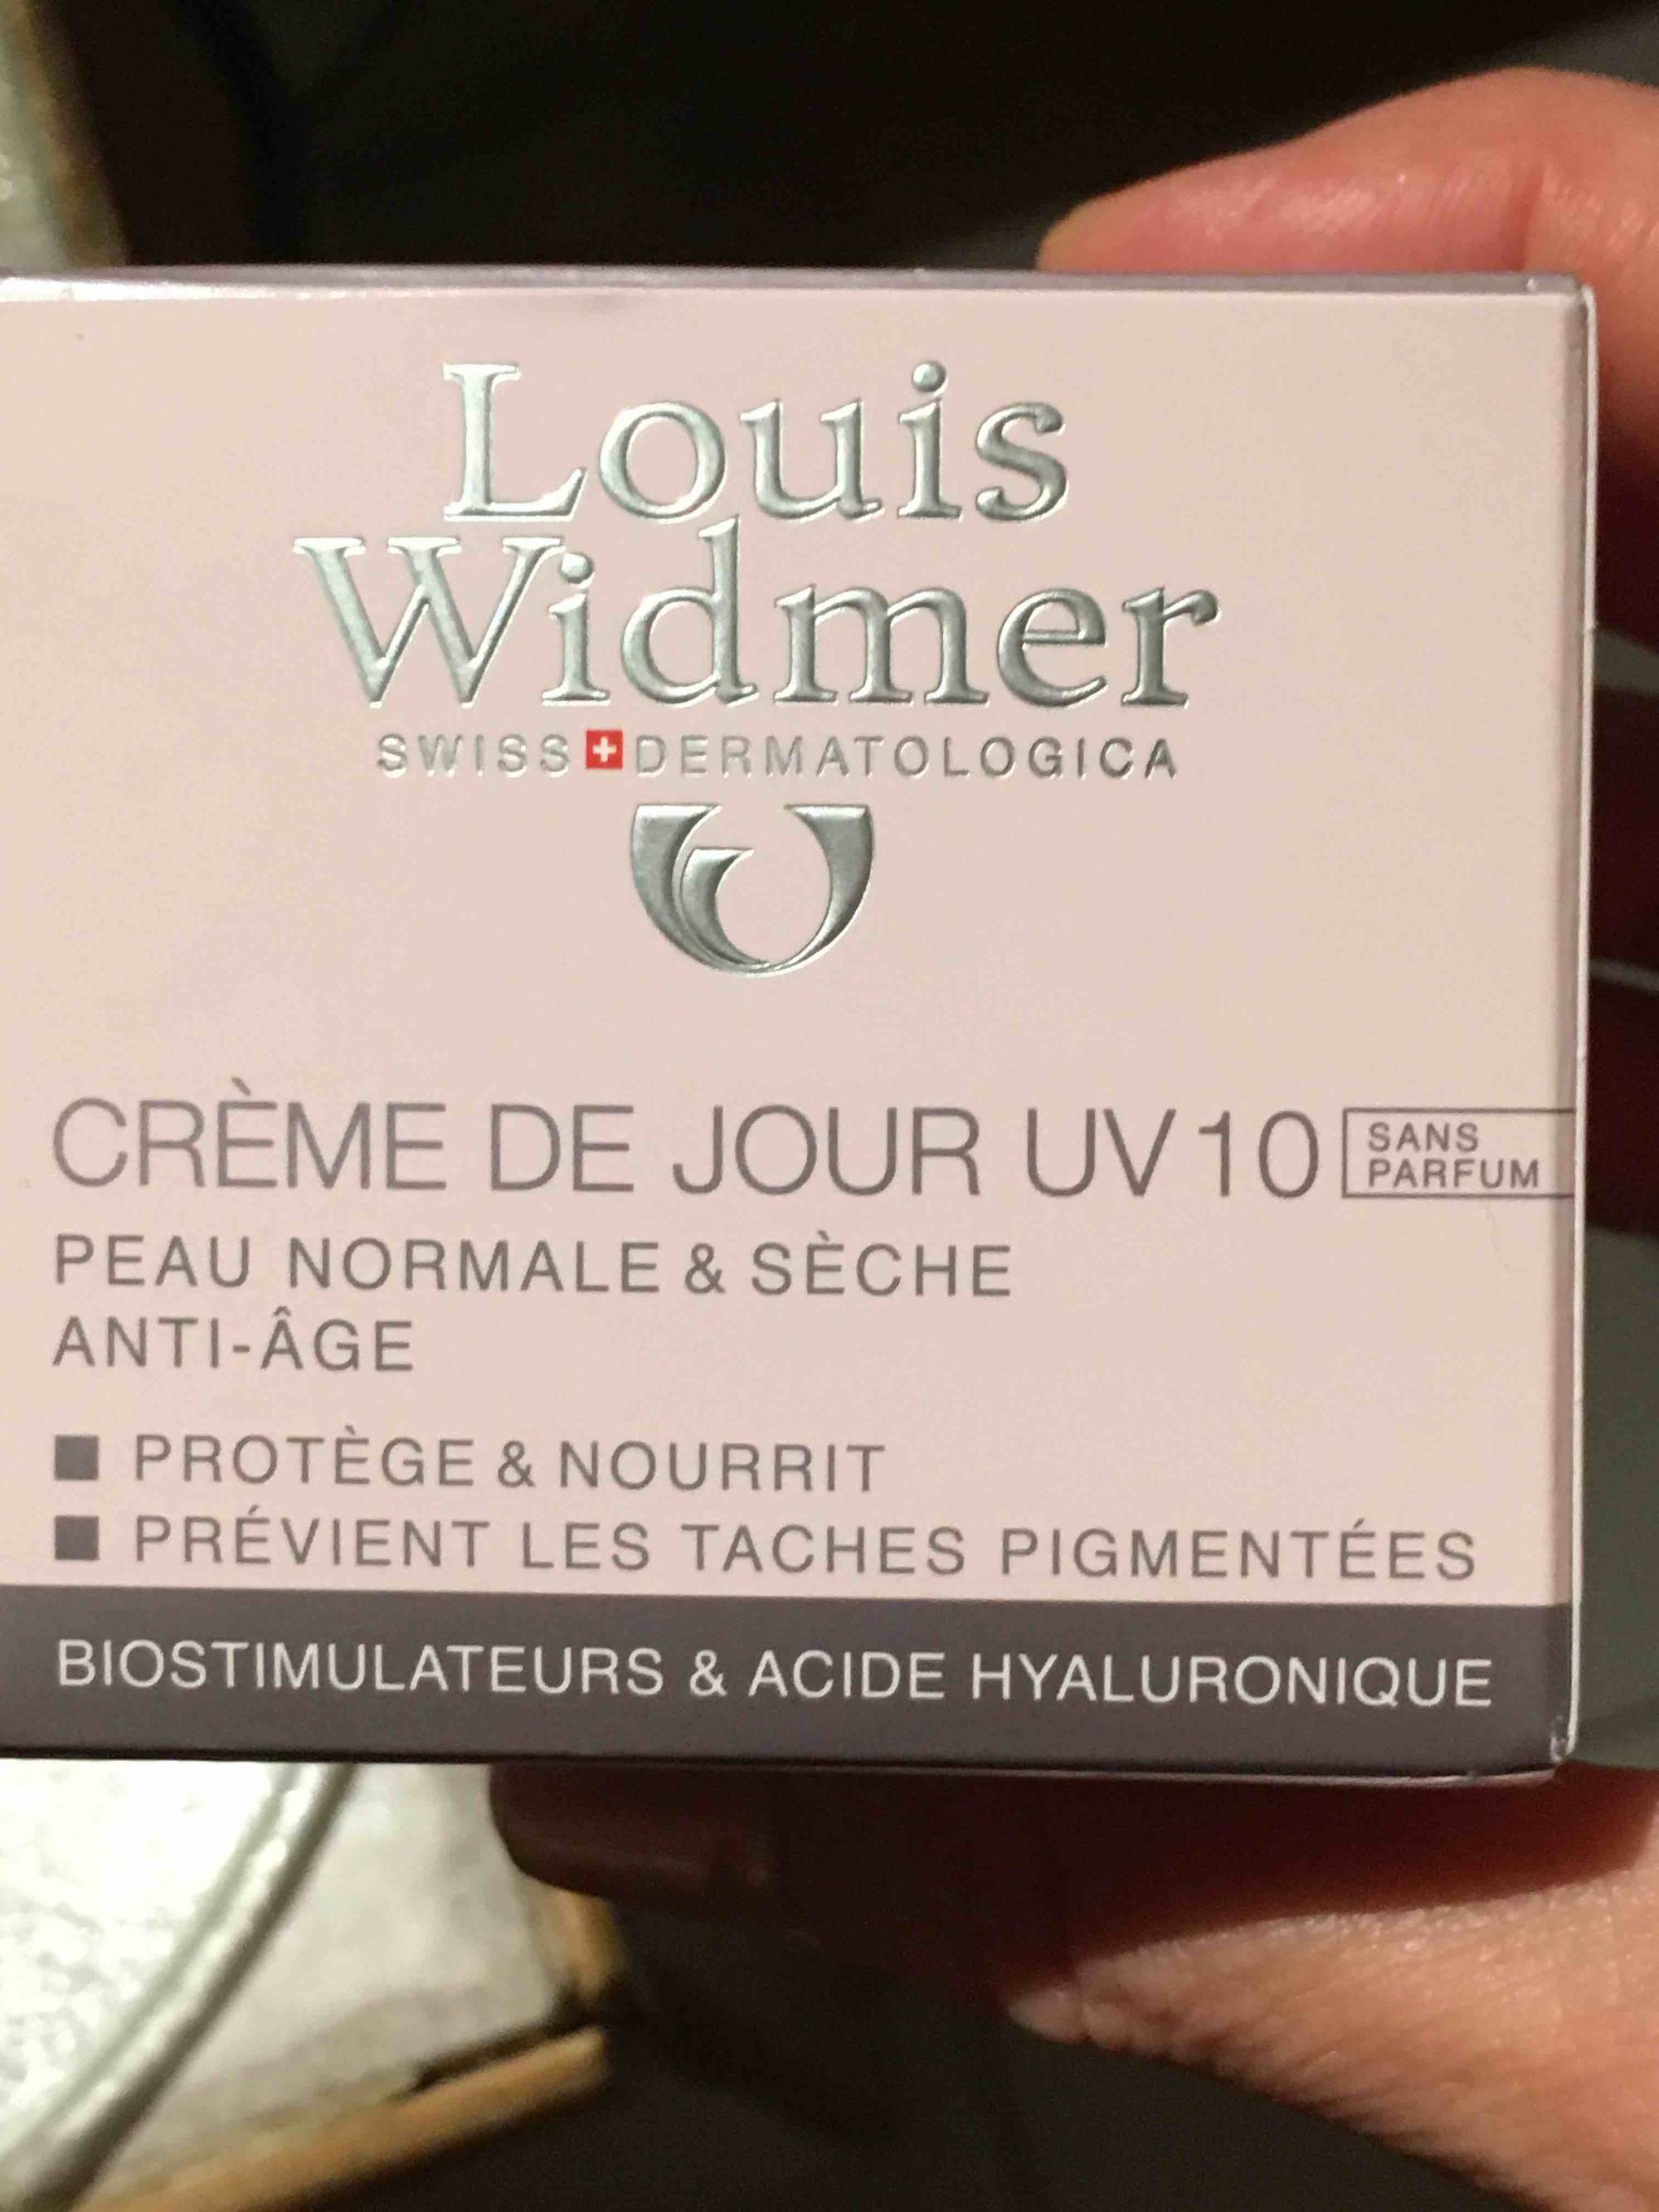 LOUIS WIDMER - Crème de jour UV10 peau normale & sèche